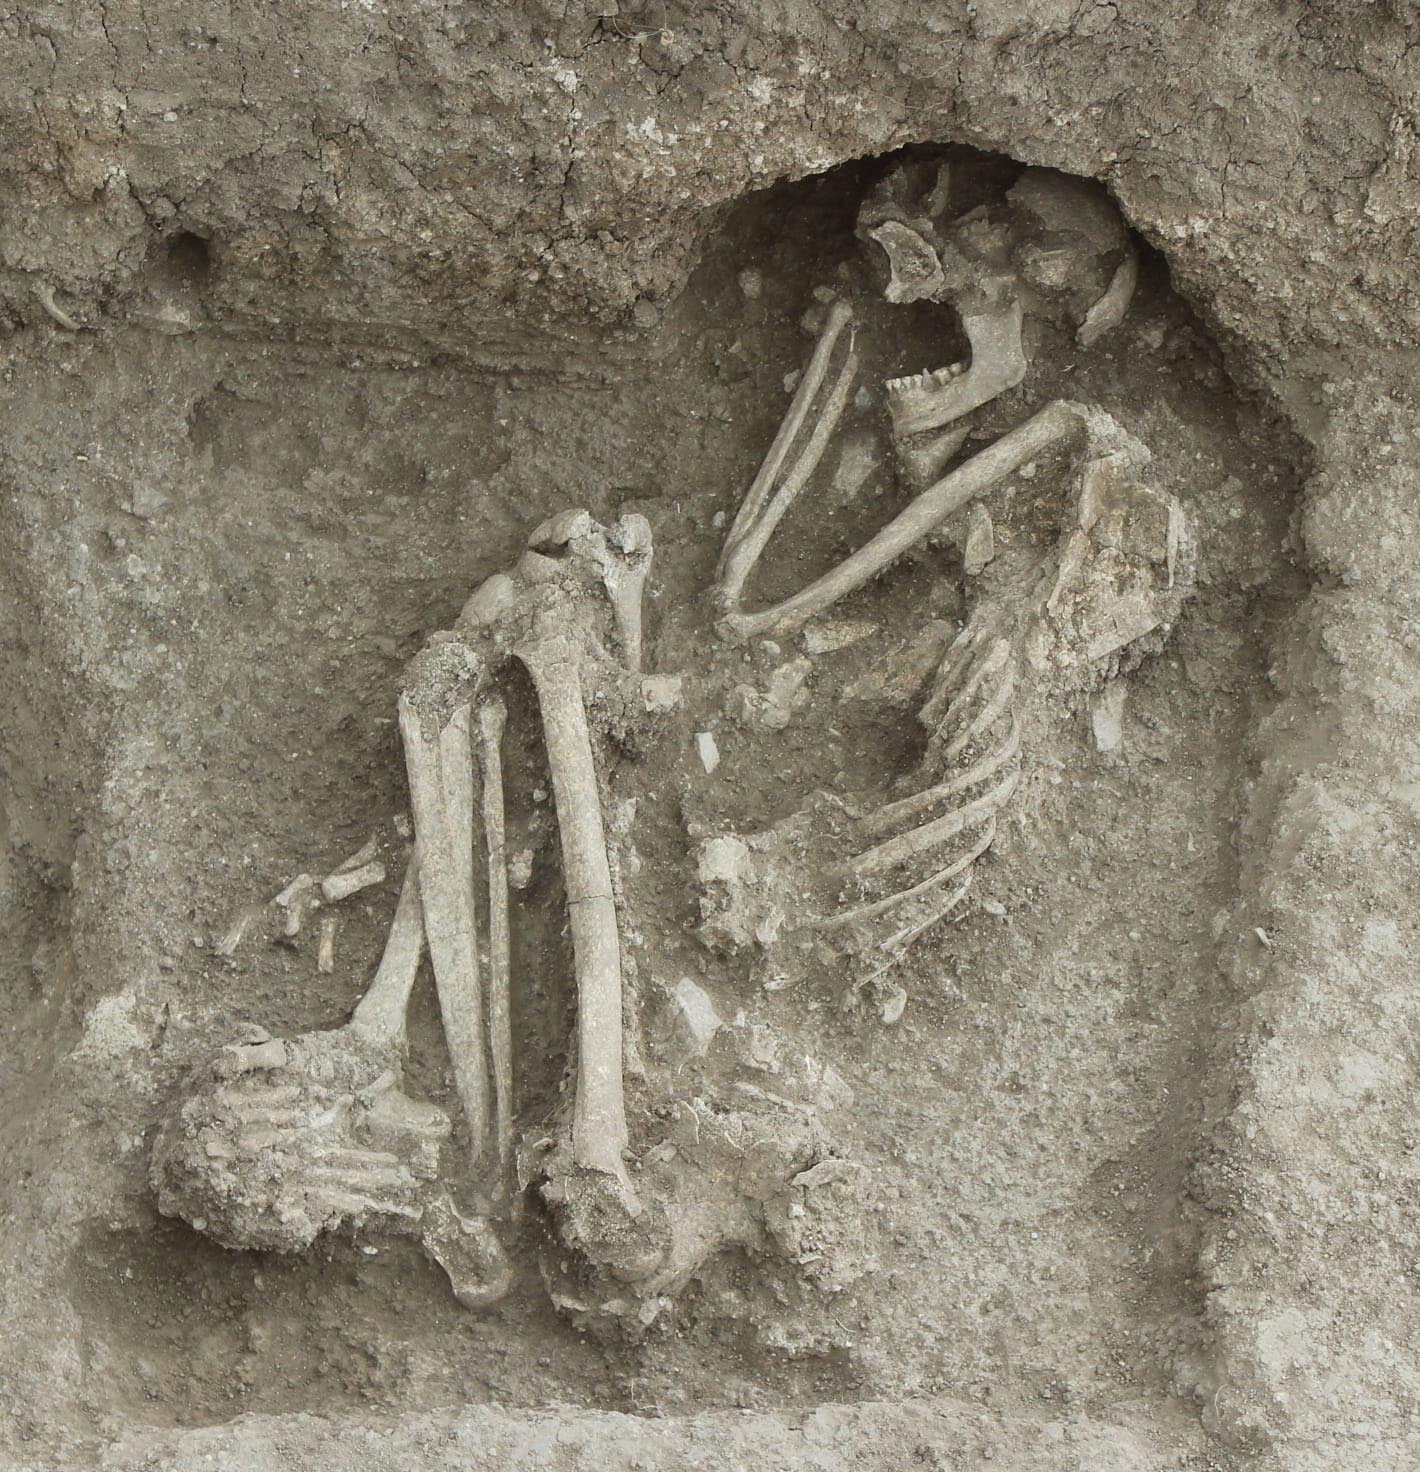 bilecikte-bulunan-8-bin-500-yillik-insan-iskeletinin-dnasi-incelenecek-5640-dhaphoto4.jpg